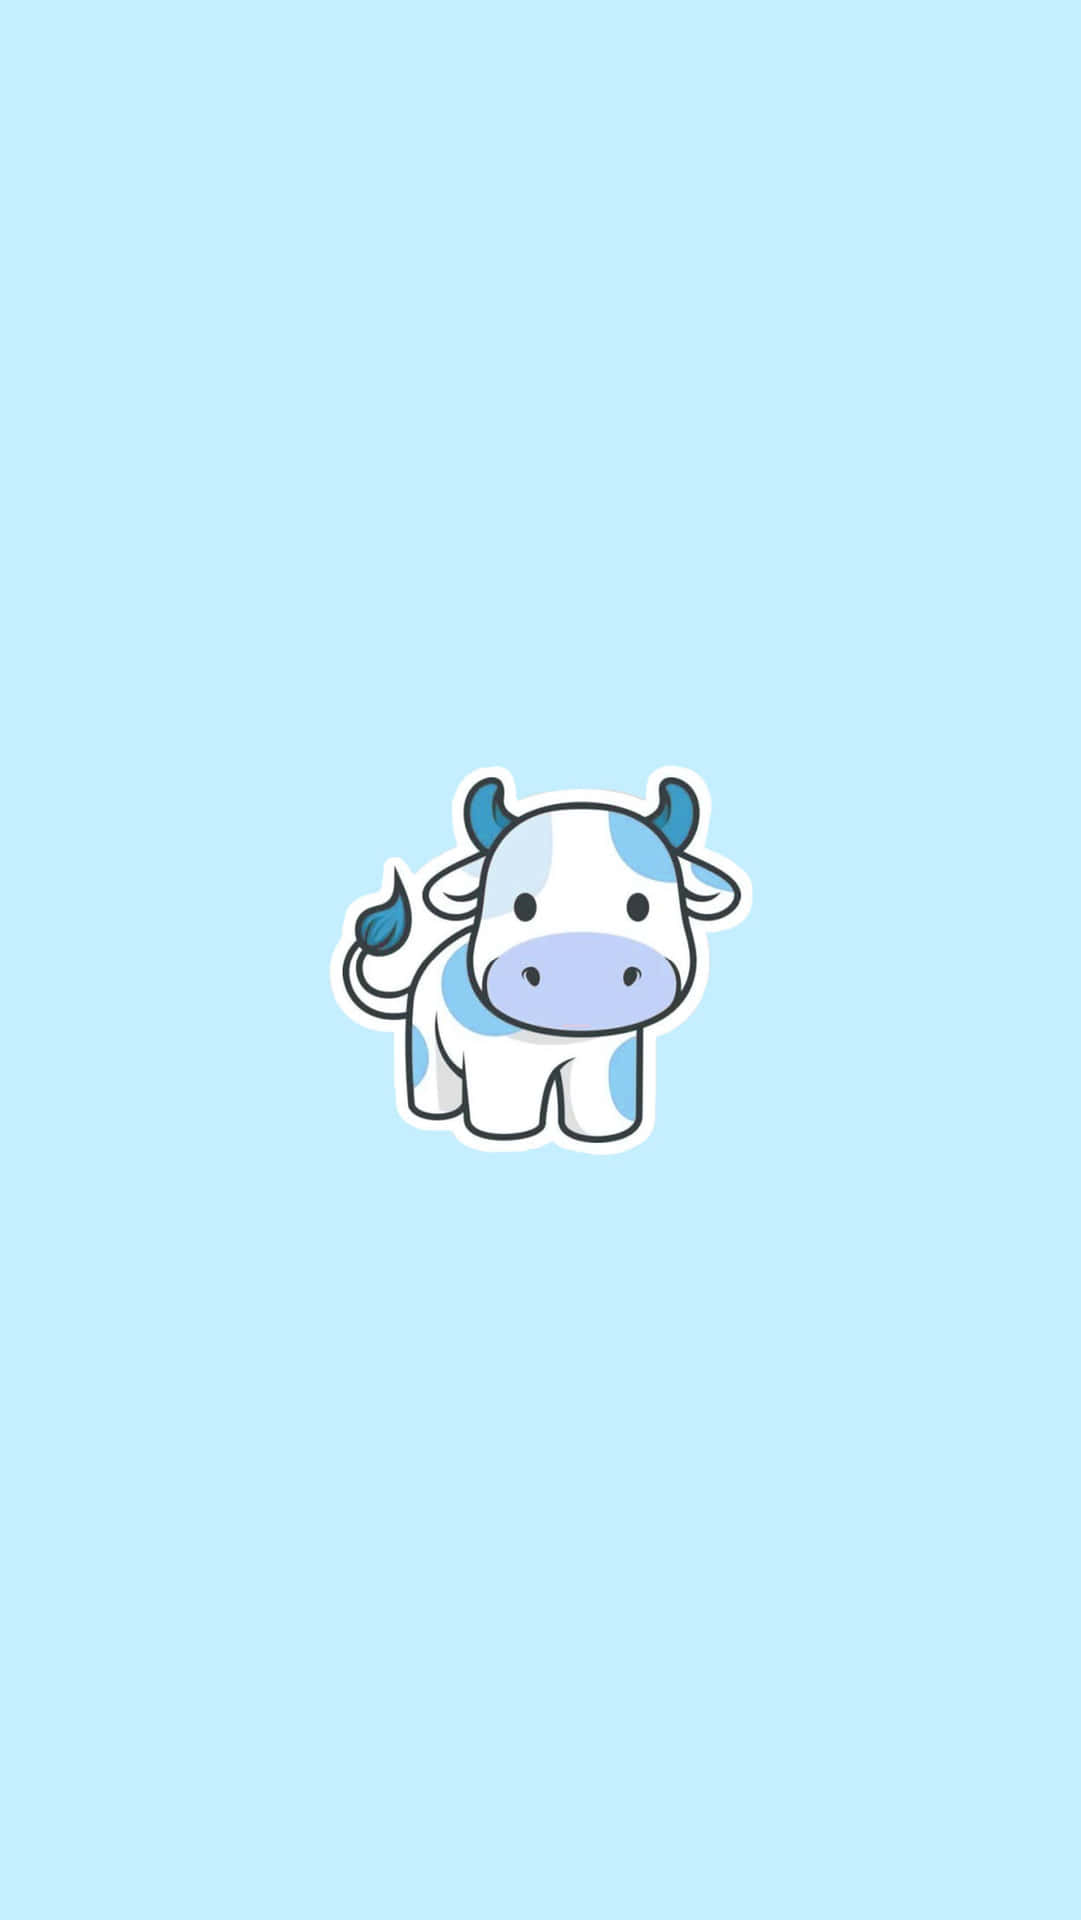 Meet the friendly Cartoon Cow!